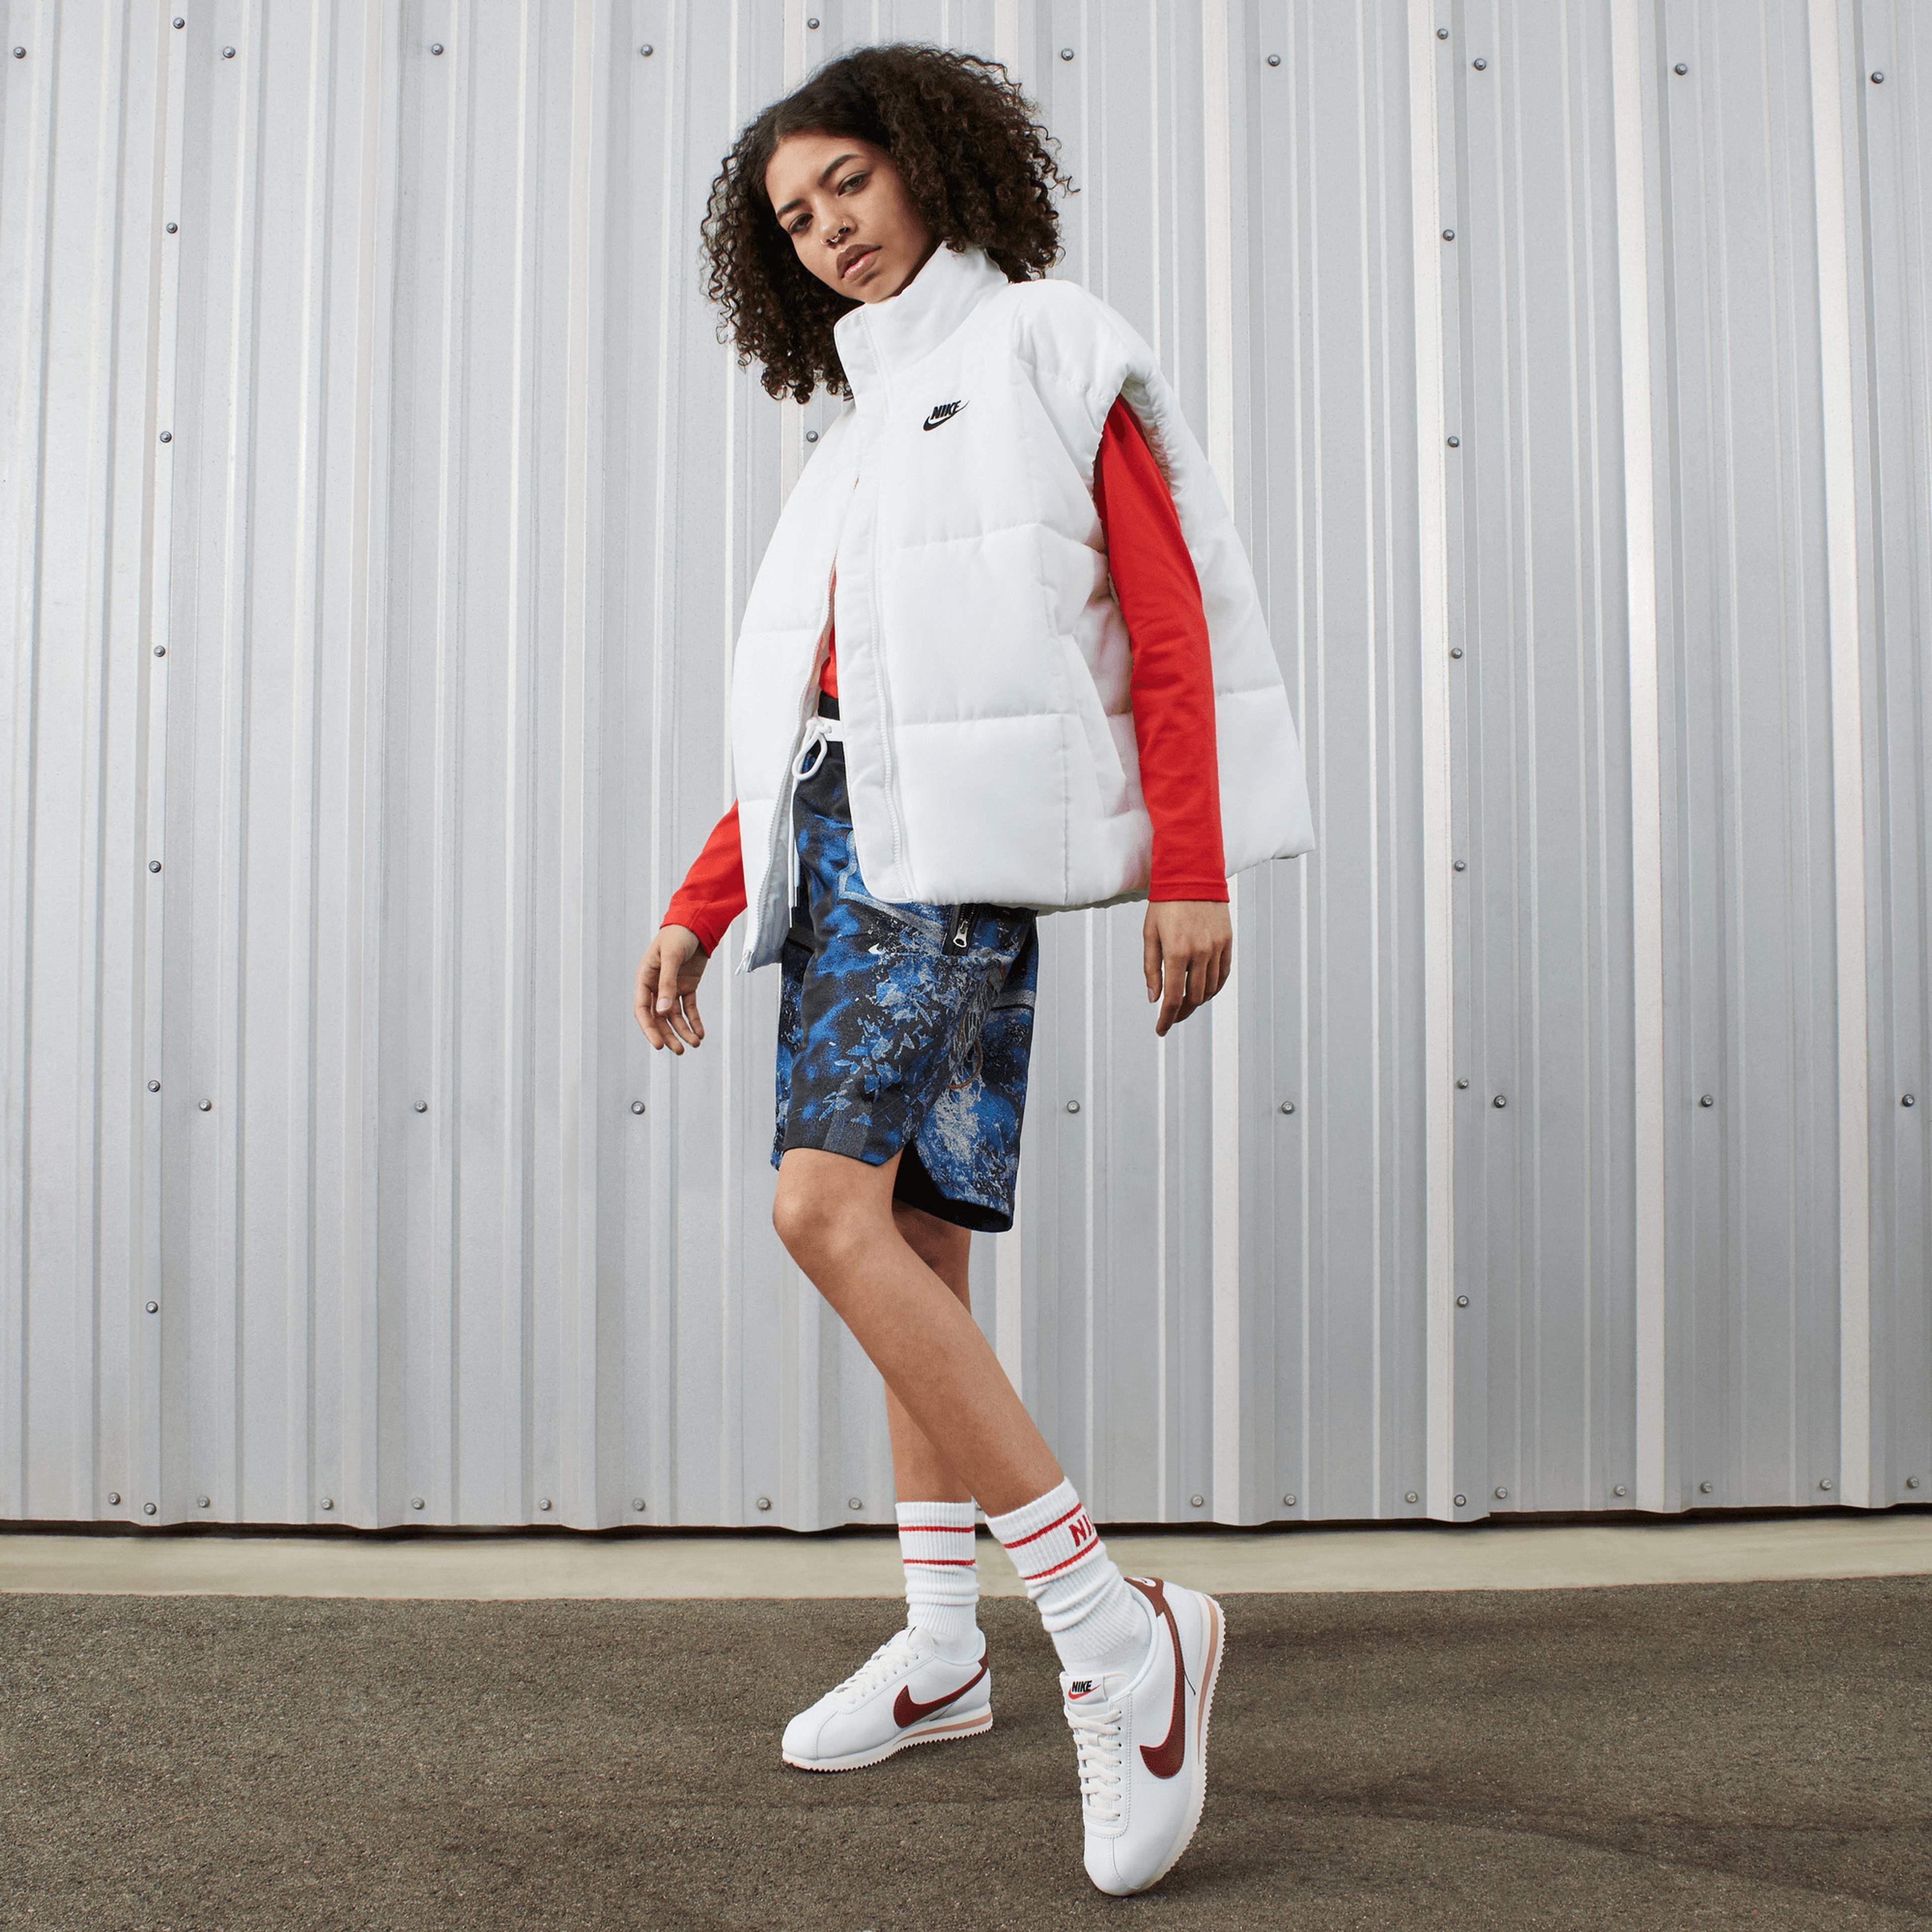 Nike Cortez Kadın Beyaz Spor Ayakkabı